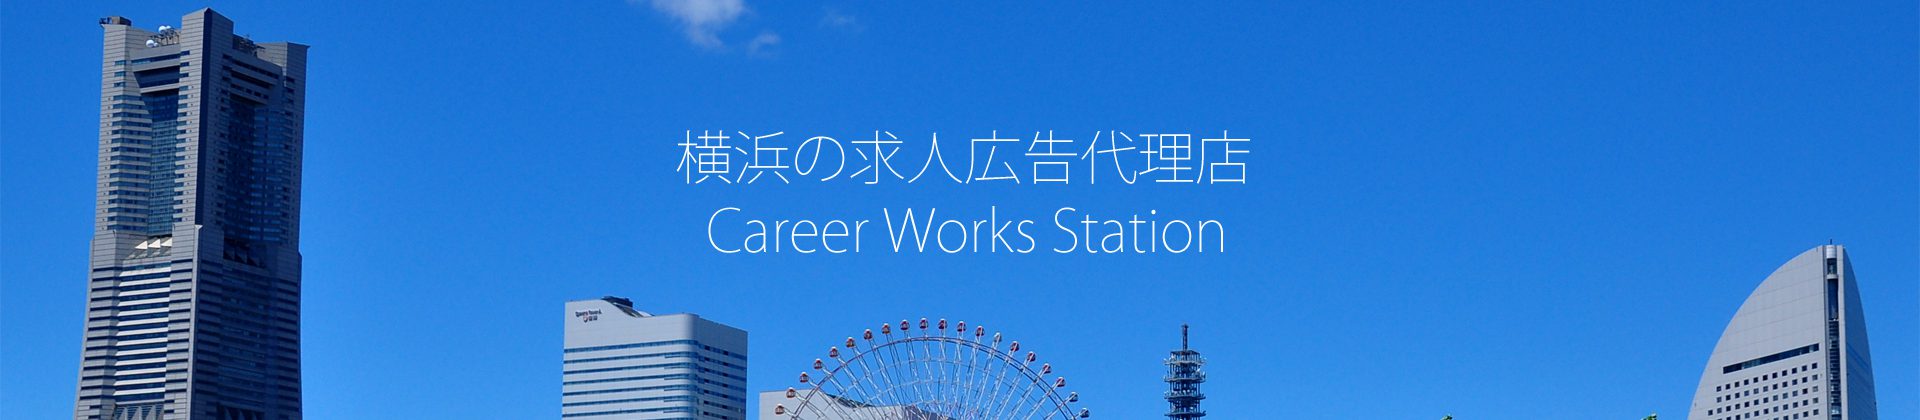 Career Works Station